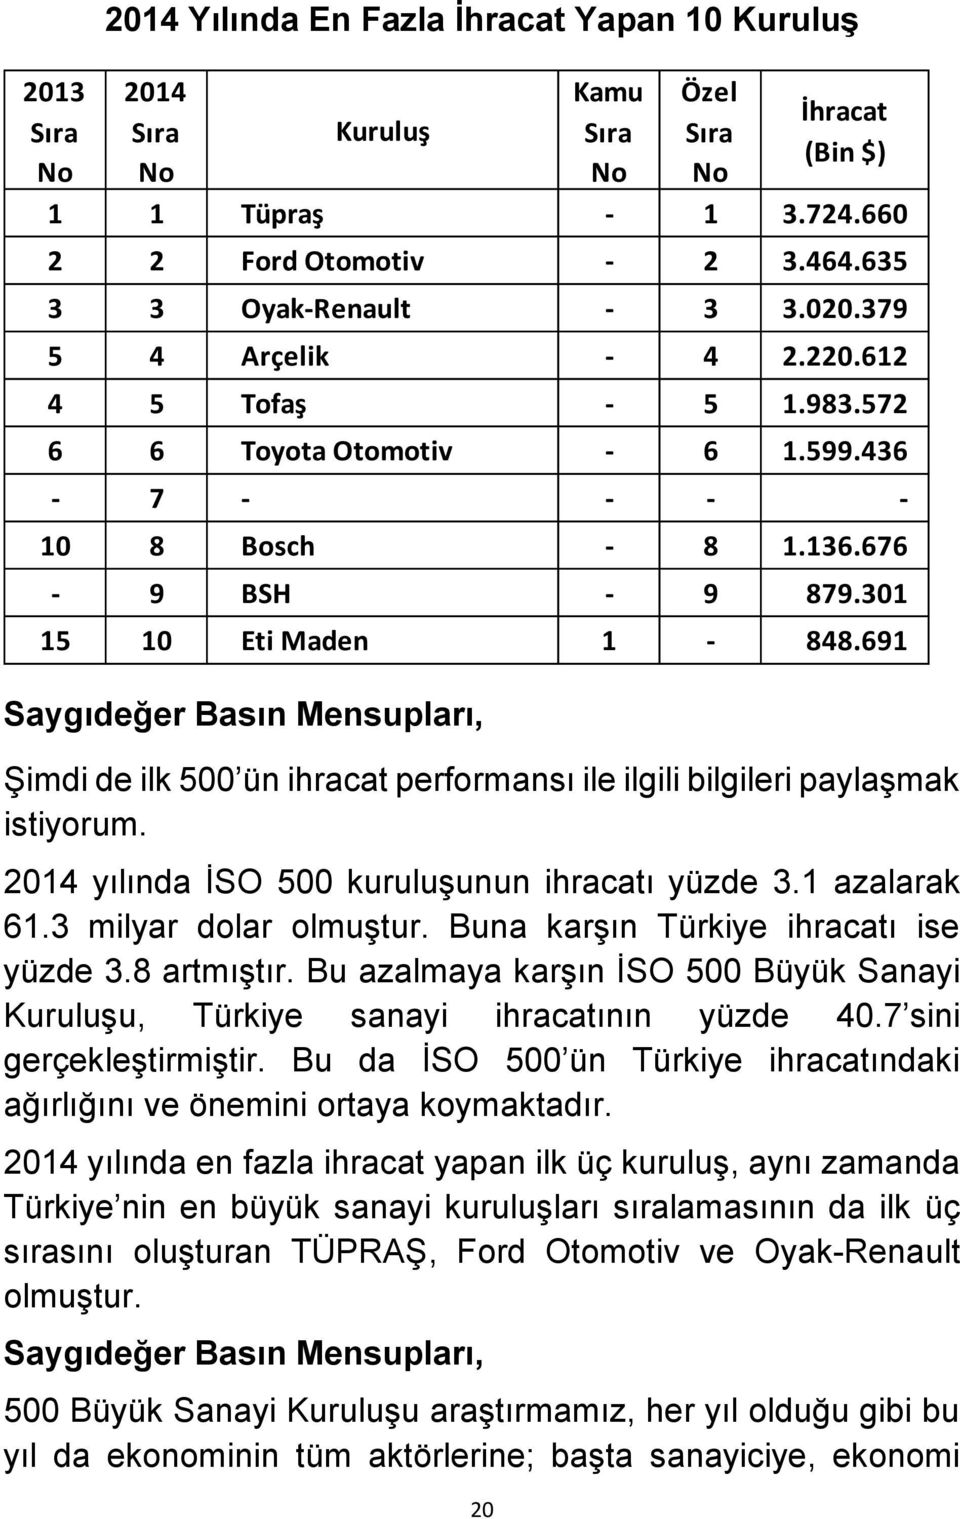 Bu azalmaya karşın İSO 500 Büyük Sanayi Kuruluşu, Türkiye sanayi ihracatının yüzde 40.7 sini gerçekleştirmiştir. Bu da İSO 500 ün Türkiye ihracatındaki ağırlığını ve önemini ortaya koymaktadır.